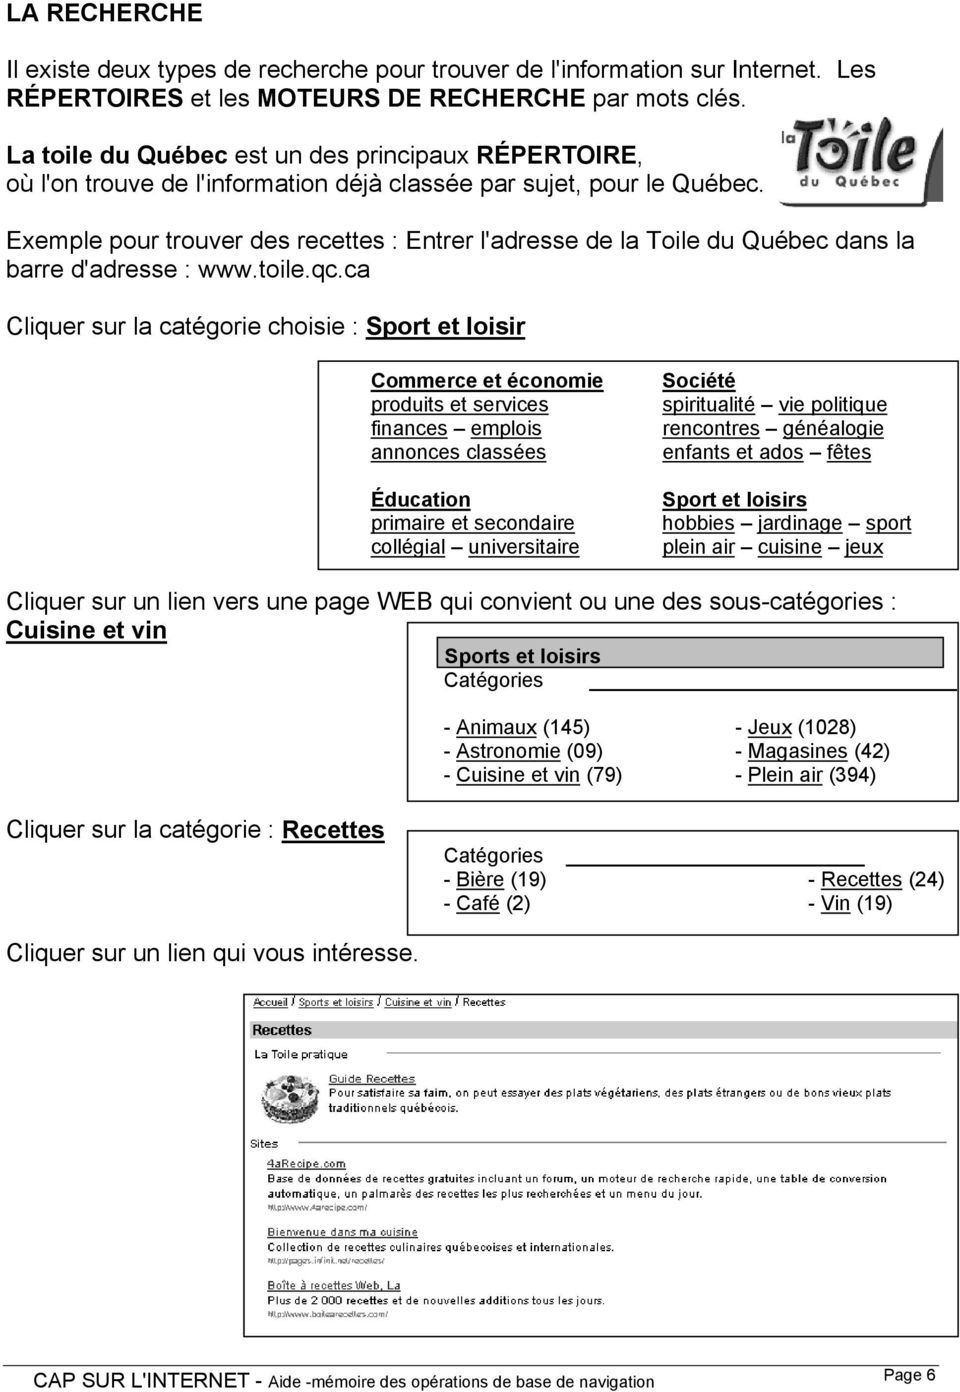 Exemple pour trouver des recettes : Entrer l'adresse de la Toile du Québec dans la barre d'adresse : www.toile.qc.